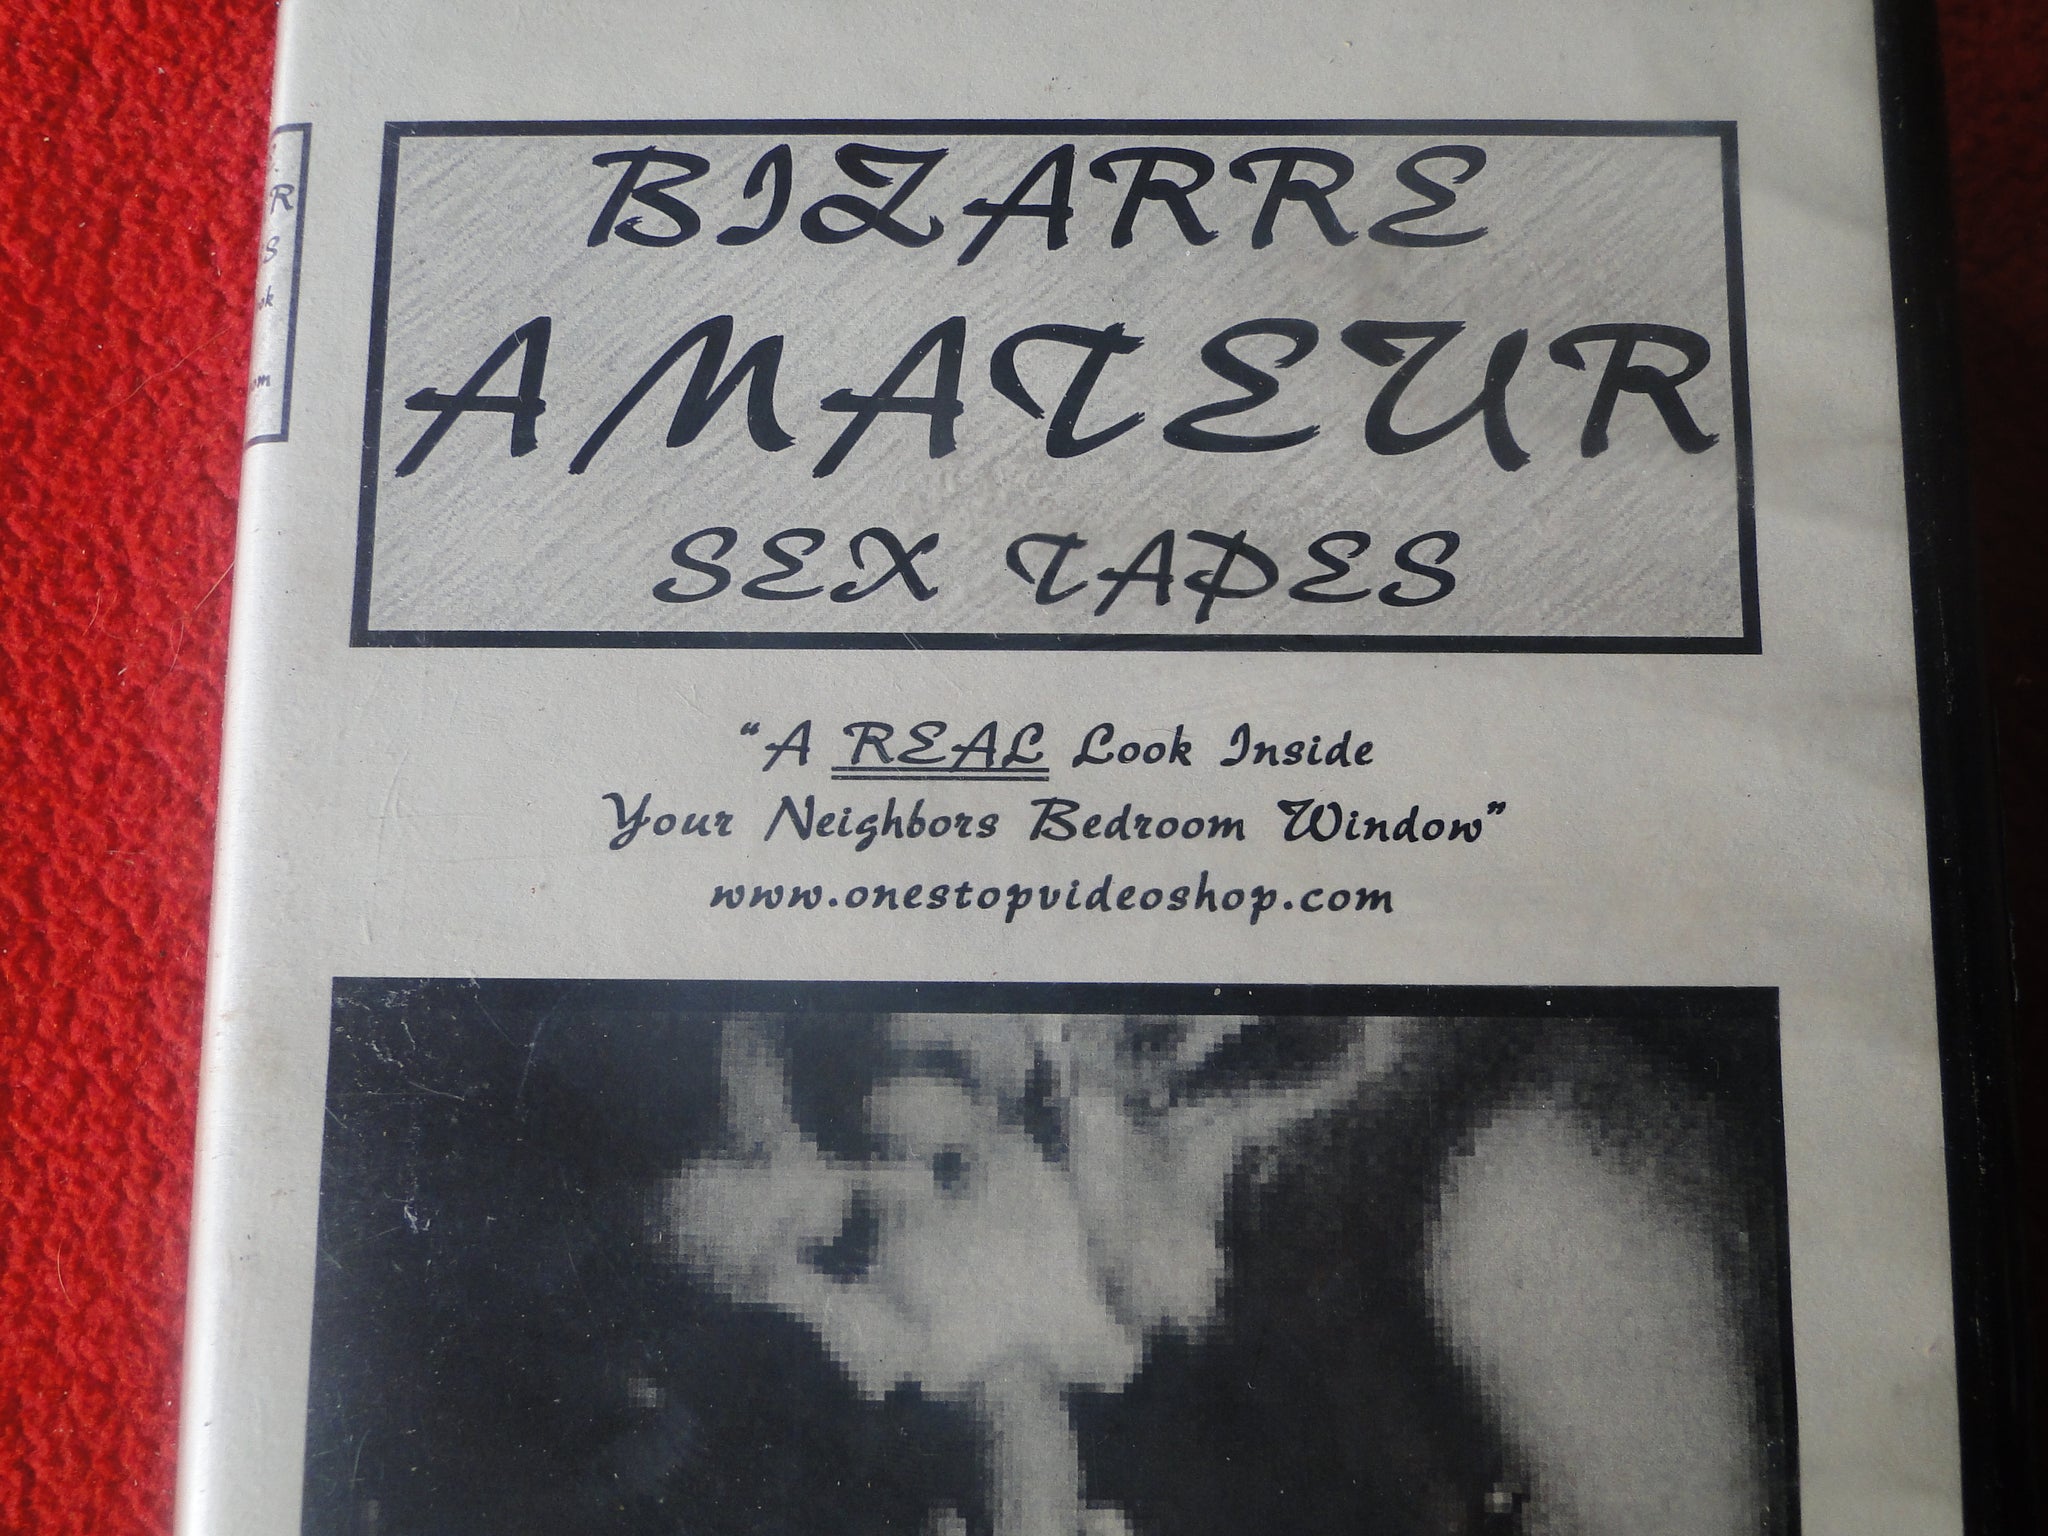 bizarre amateur sex tapes